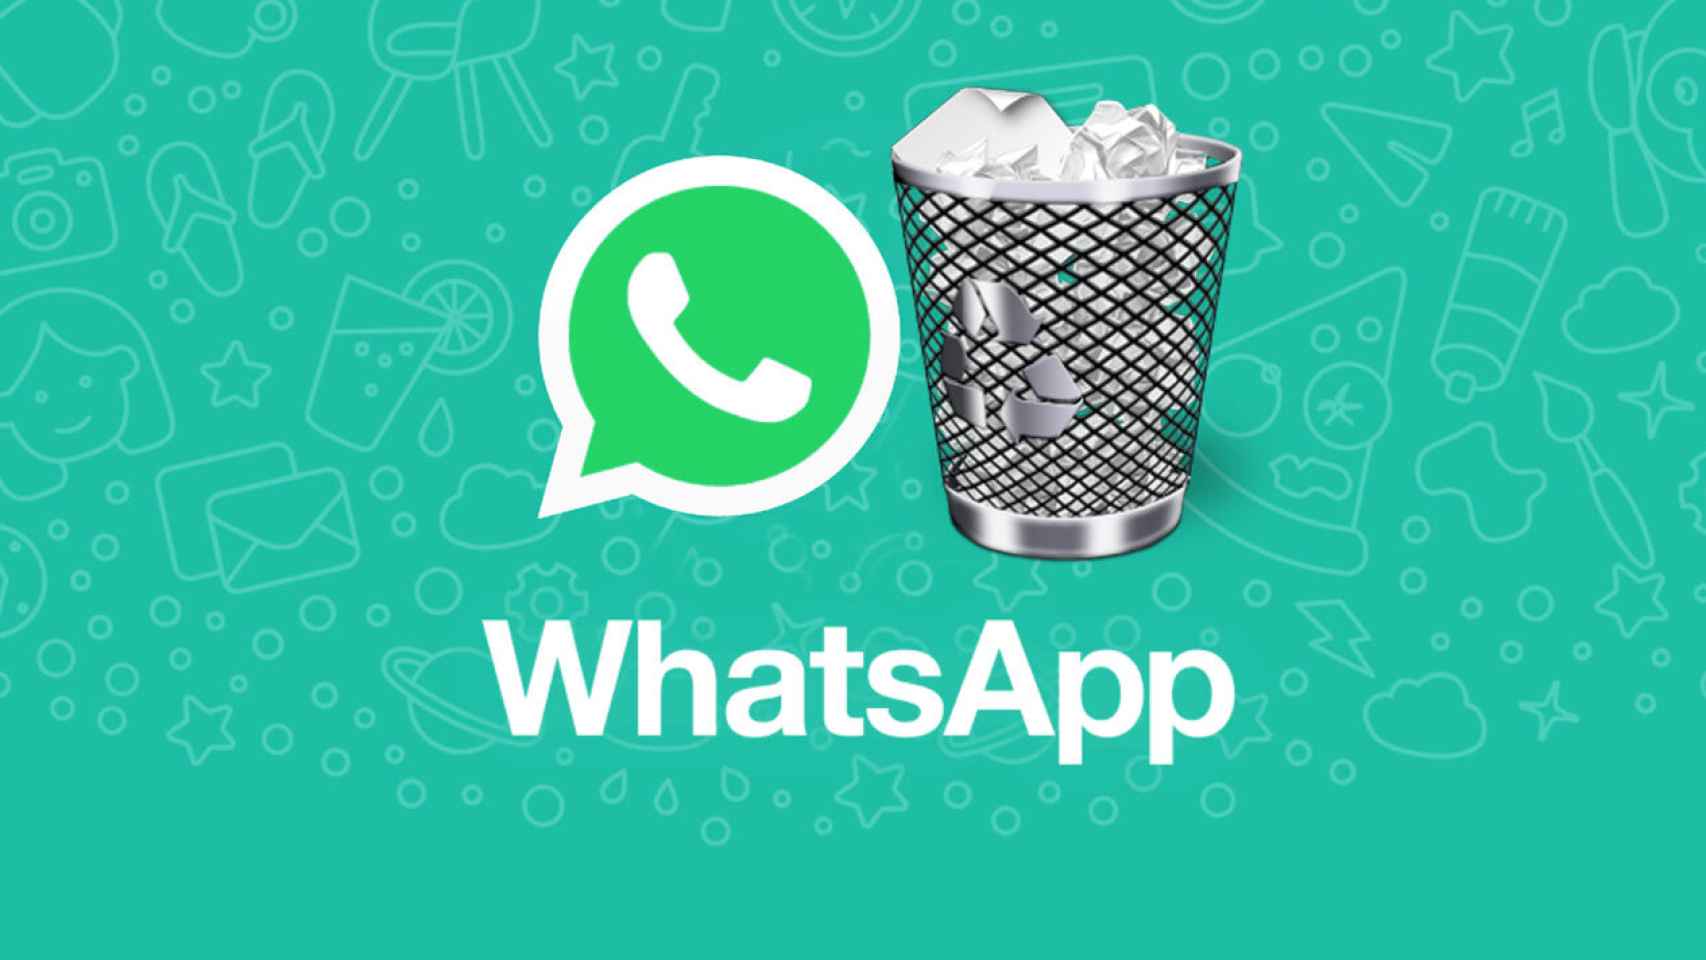 Un fallo de WhatsApp permite leer mensajes borrados